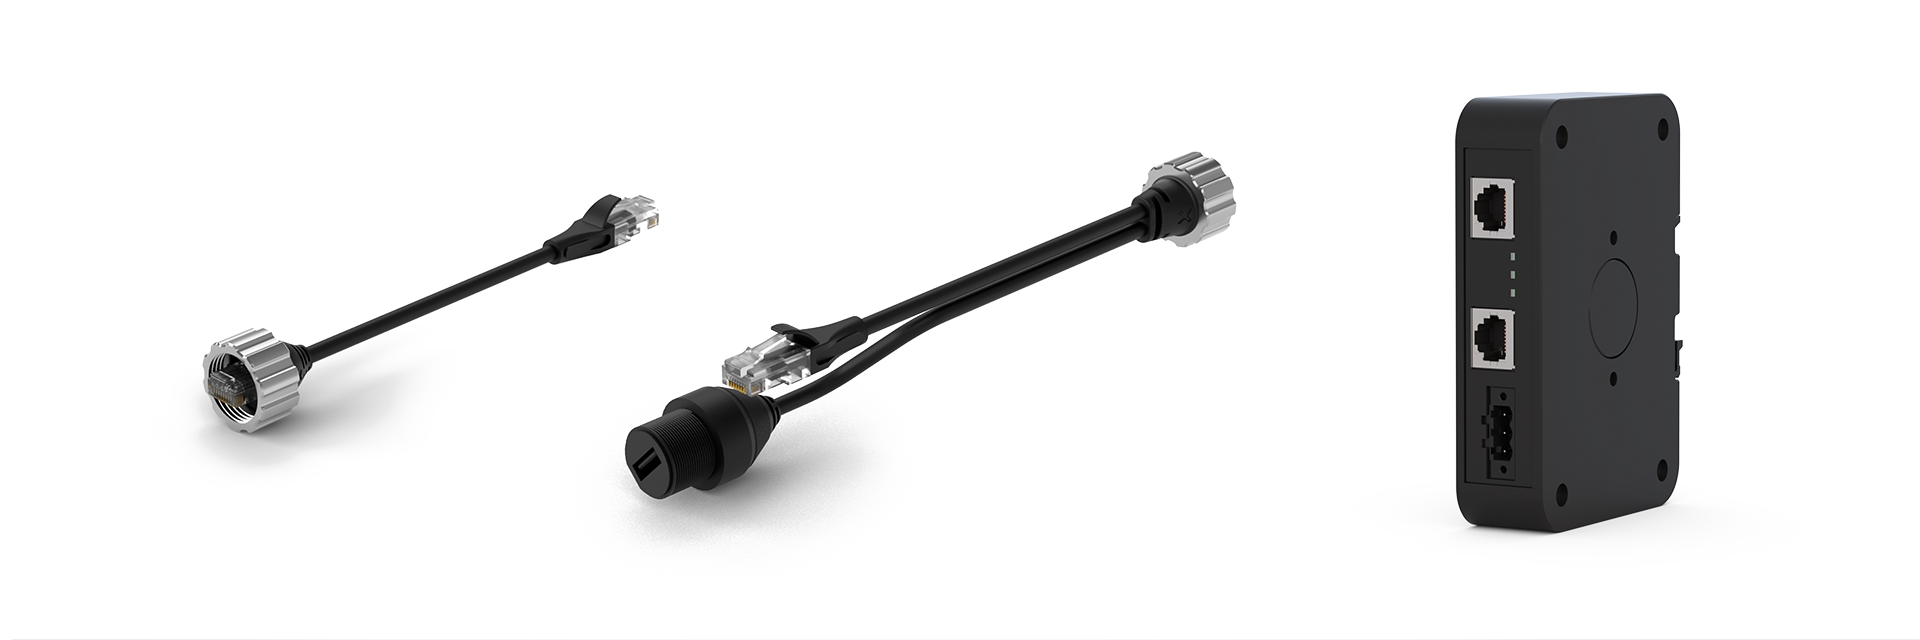 Kabel für PoE und Ethernet/USB, PoE-Injektor für die von KEB Automation vertriebenen C6 X1 Panels